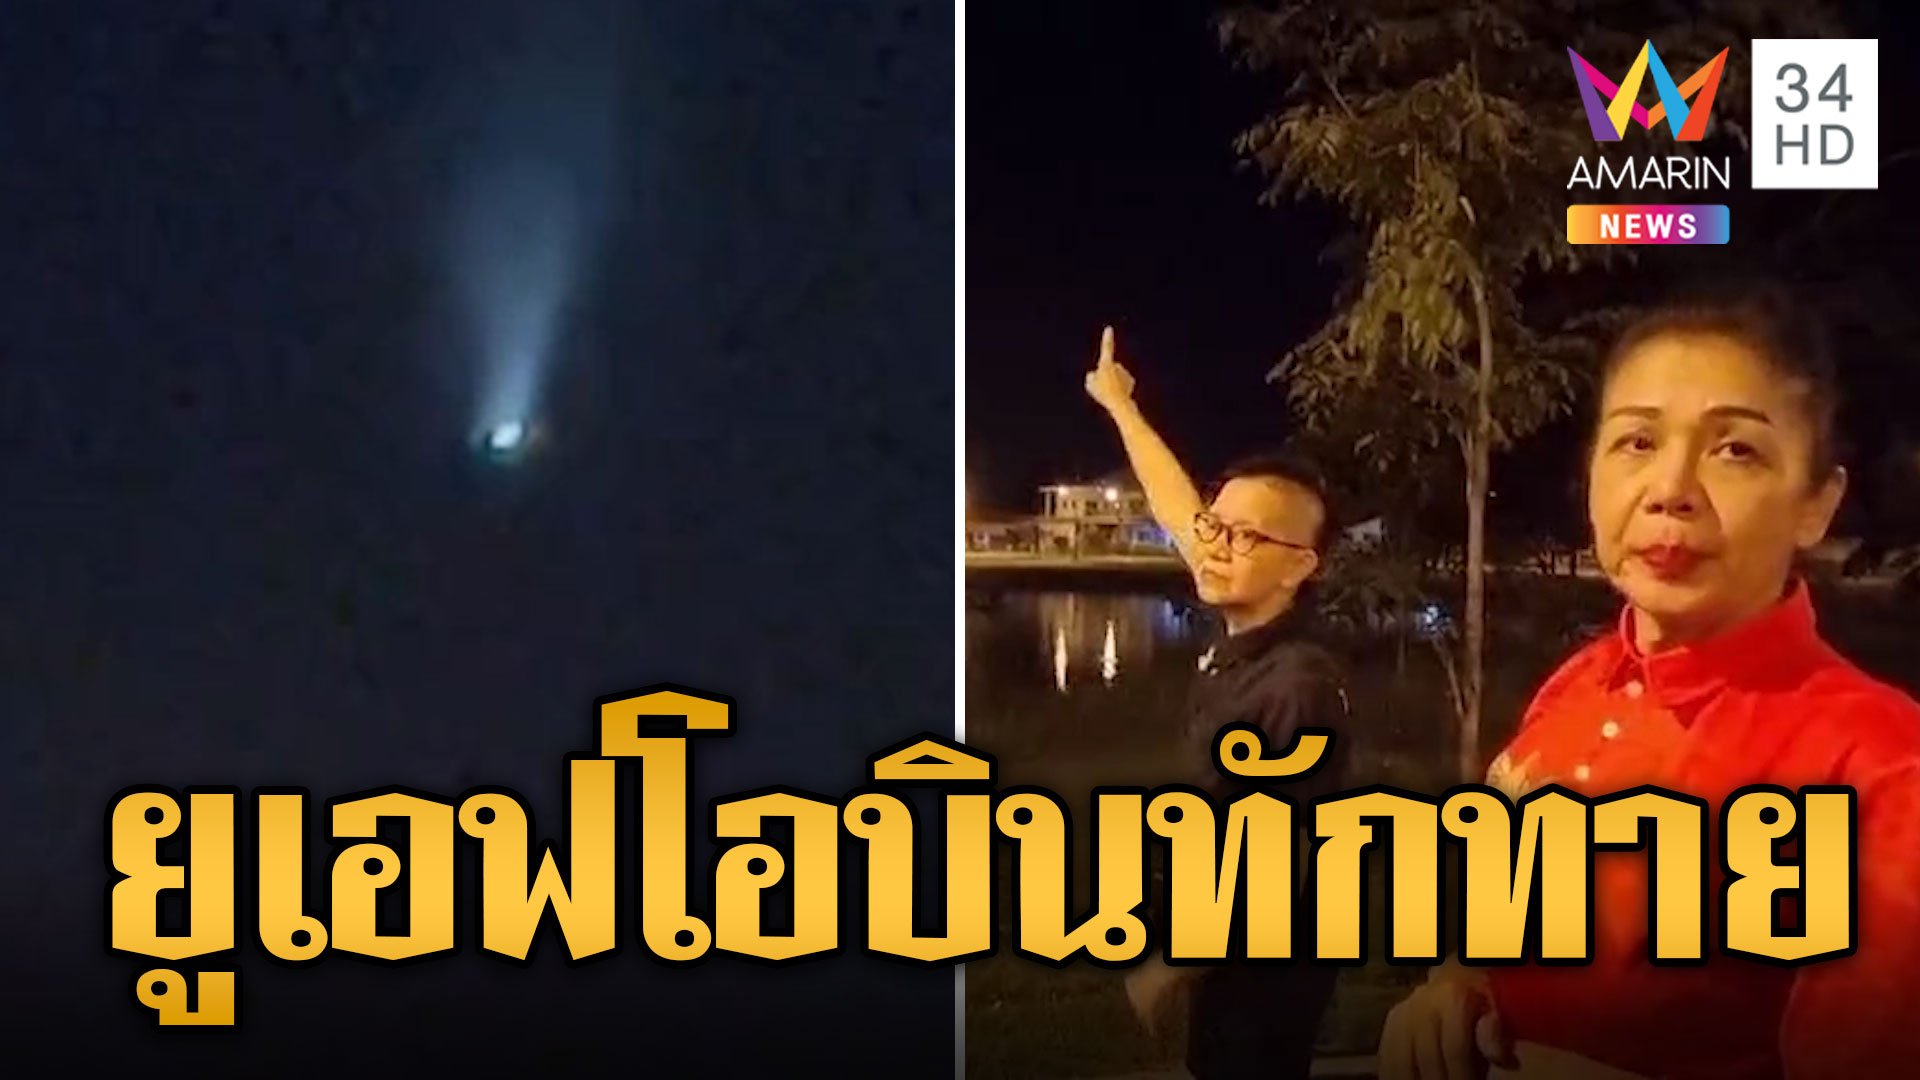 ฮือฮา! UFO บินโชว์กลางเมือง ยิงแสงเลเซอร์ทักทายชาวโลก | ข่าวอรุณอมรินทร์ | 30 มิ.ย. 67 | AMARIN TVHD34